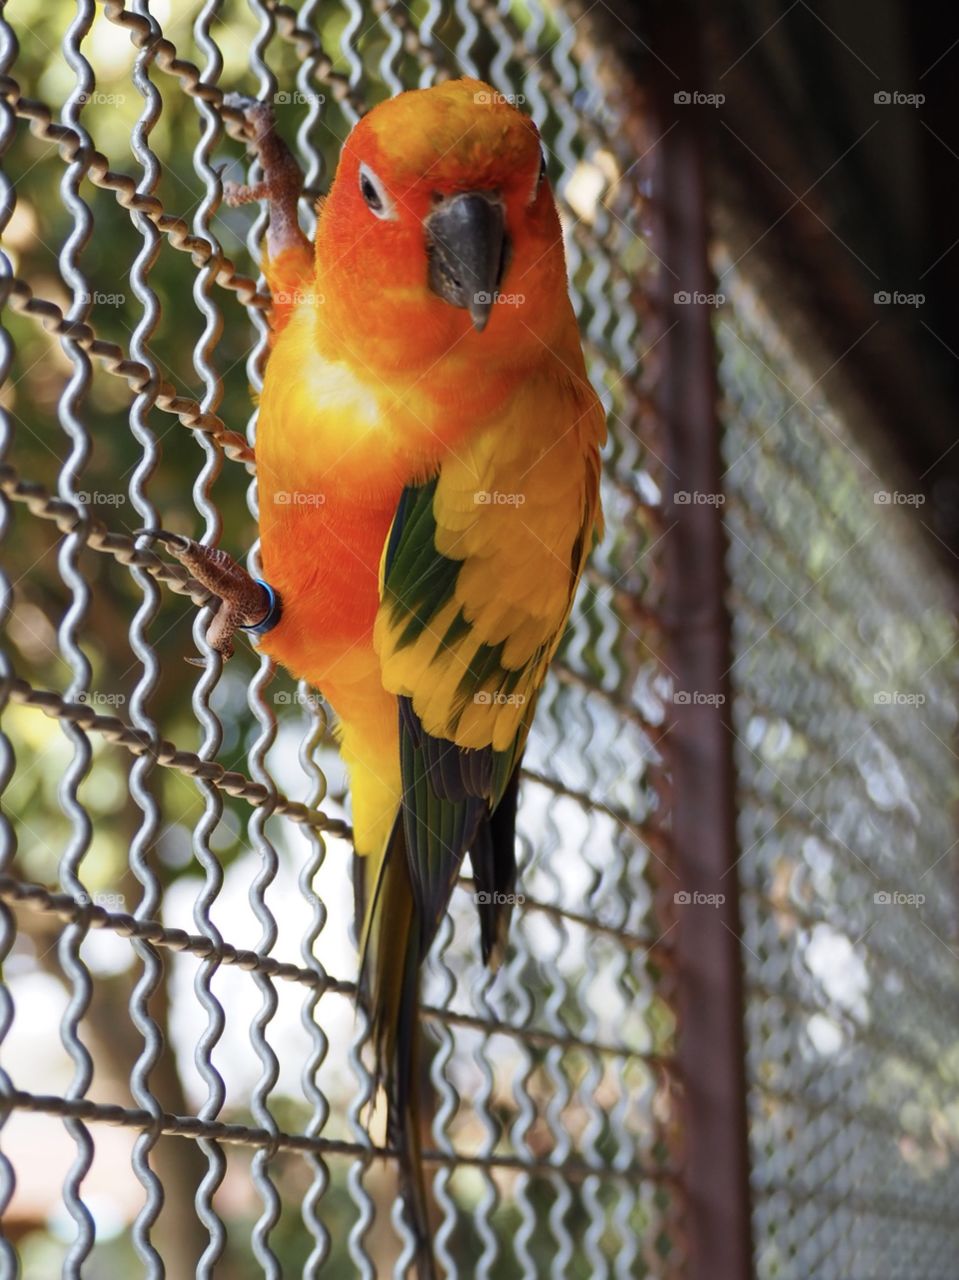 My sun conure parrot 